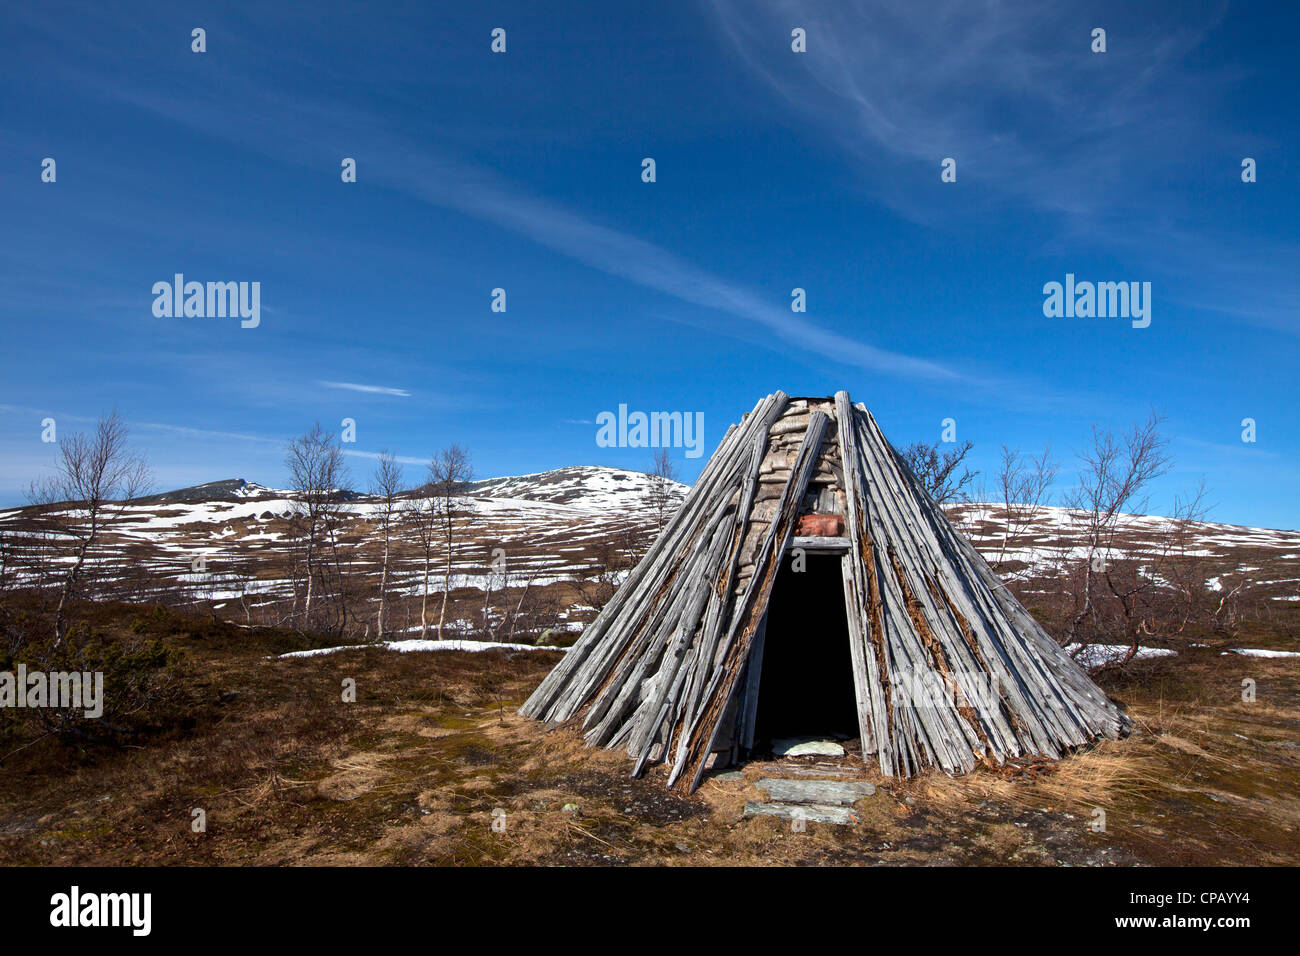 Un goahti / kota, Sami traditionnels de cabane en bois dans la toundra au printemps, Laponie, Suède Banque D'Images